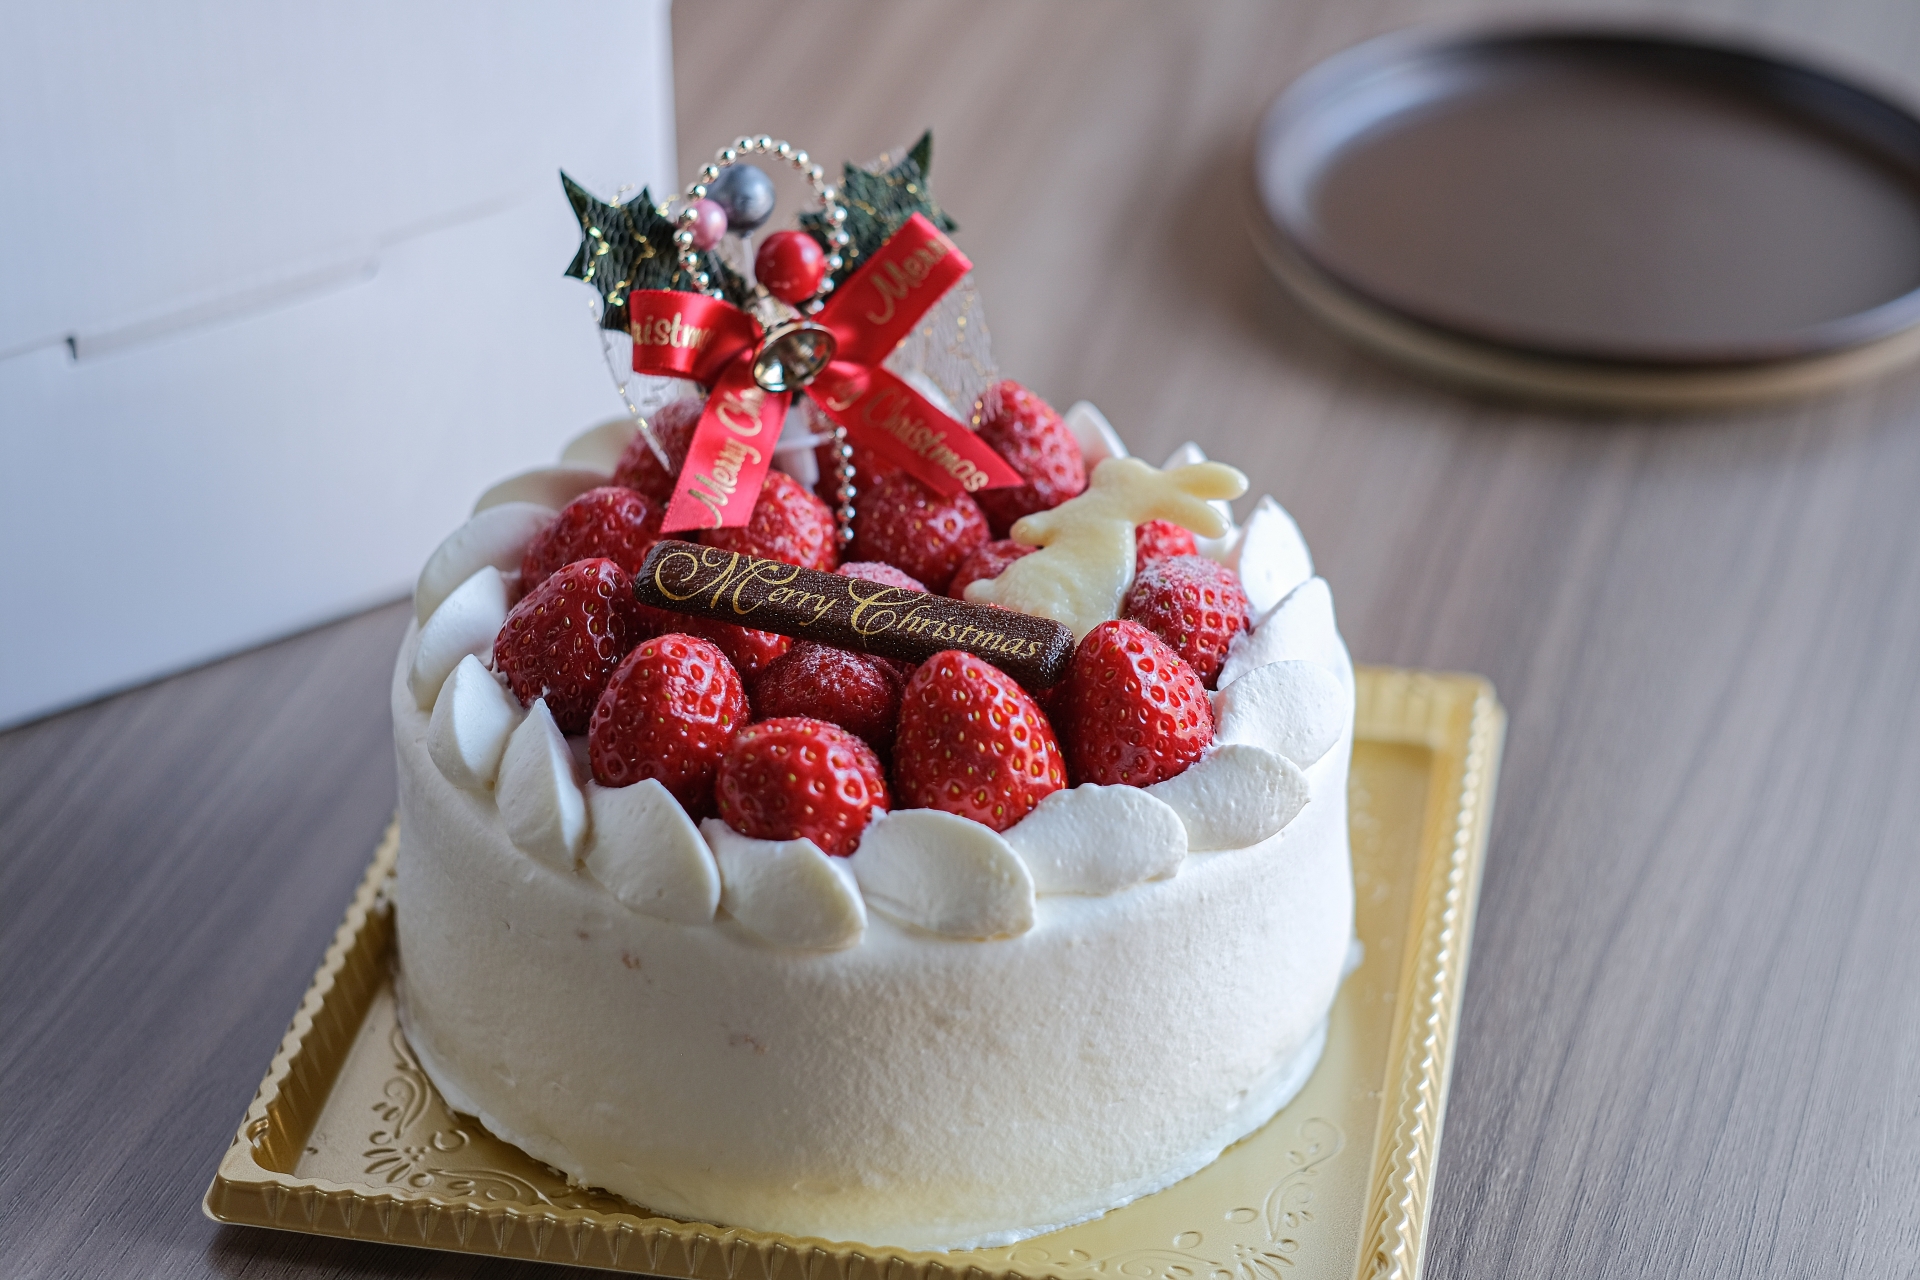 イチゴとクリスマス用のかざりがのったショートケーキ